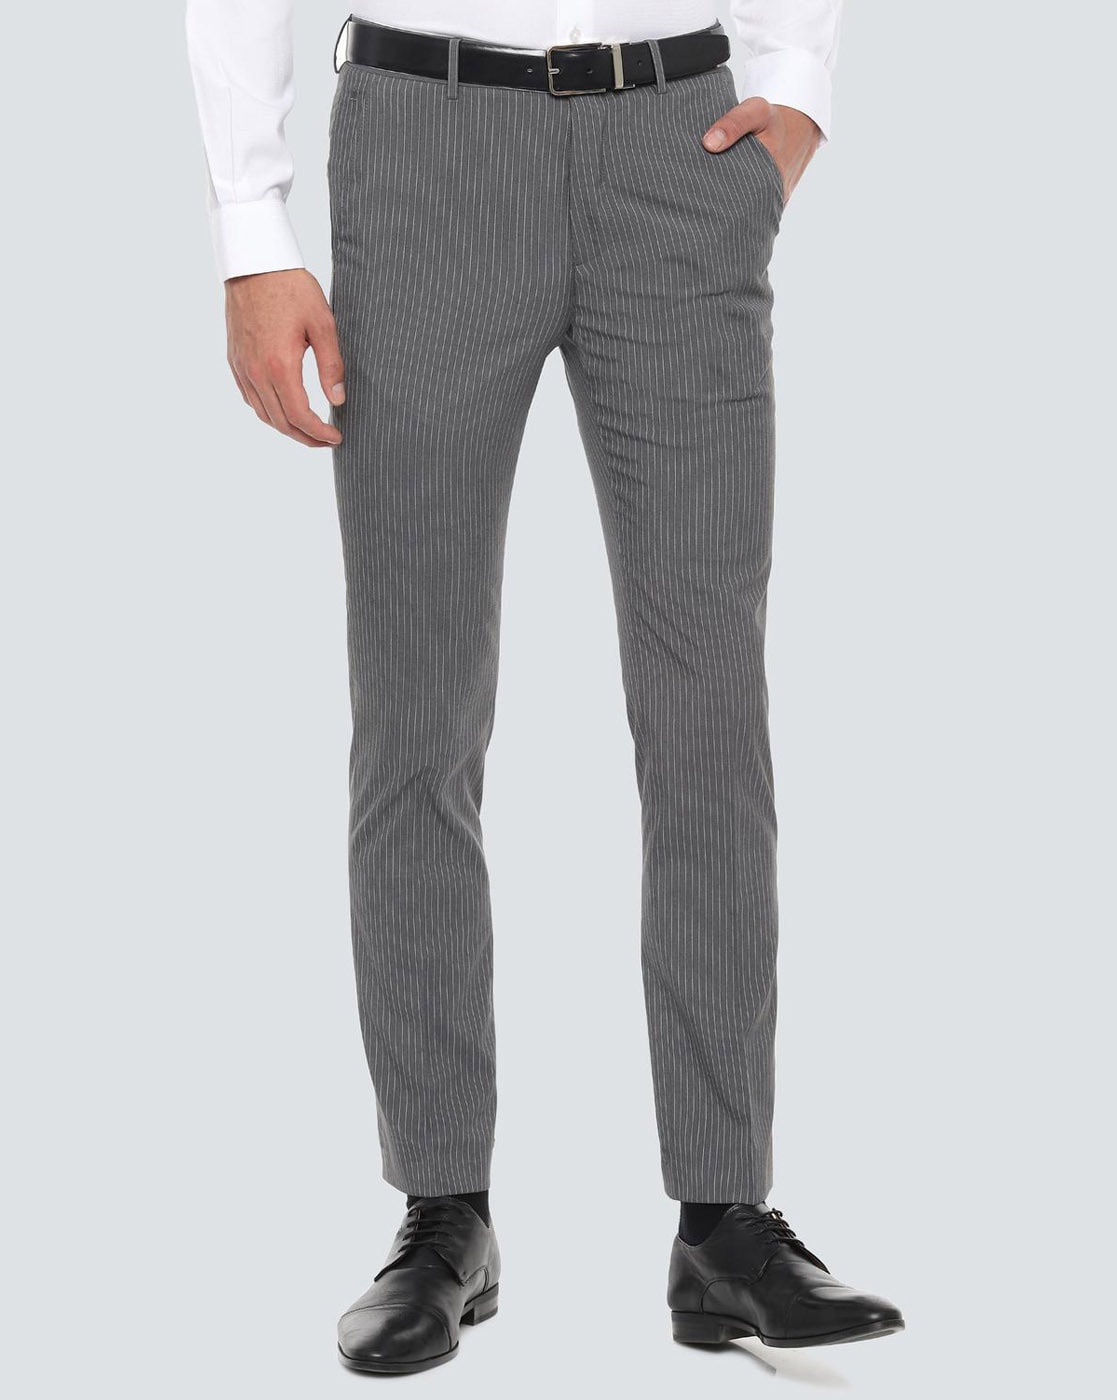 Buy Men Grey Slim Fit Stripe Casual Trousers Online  805672  Allen Solly